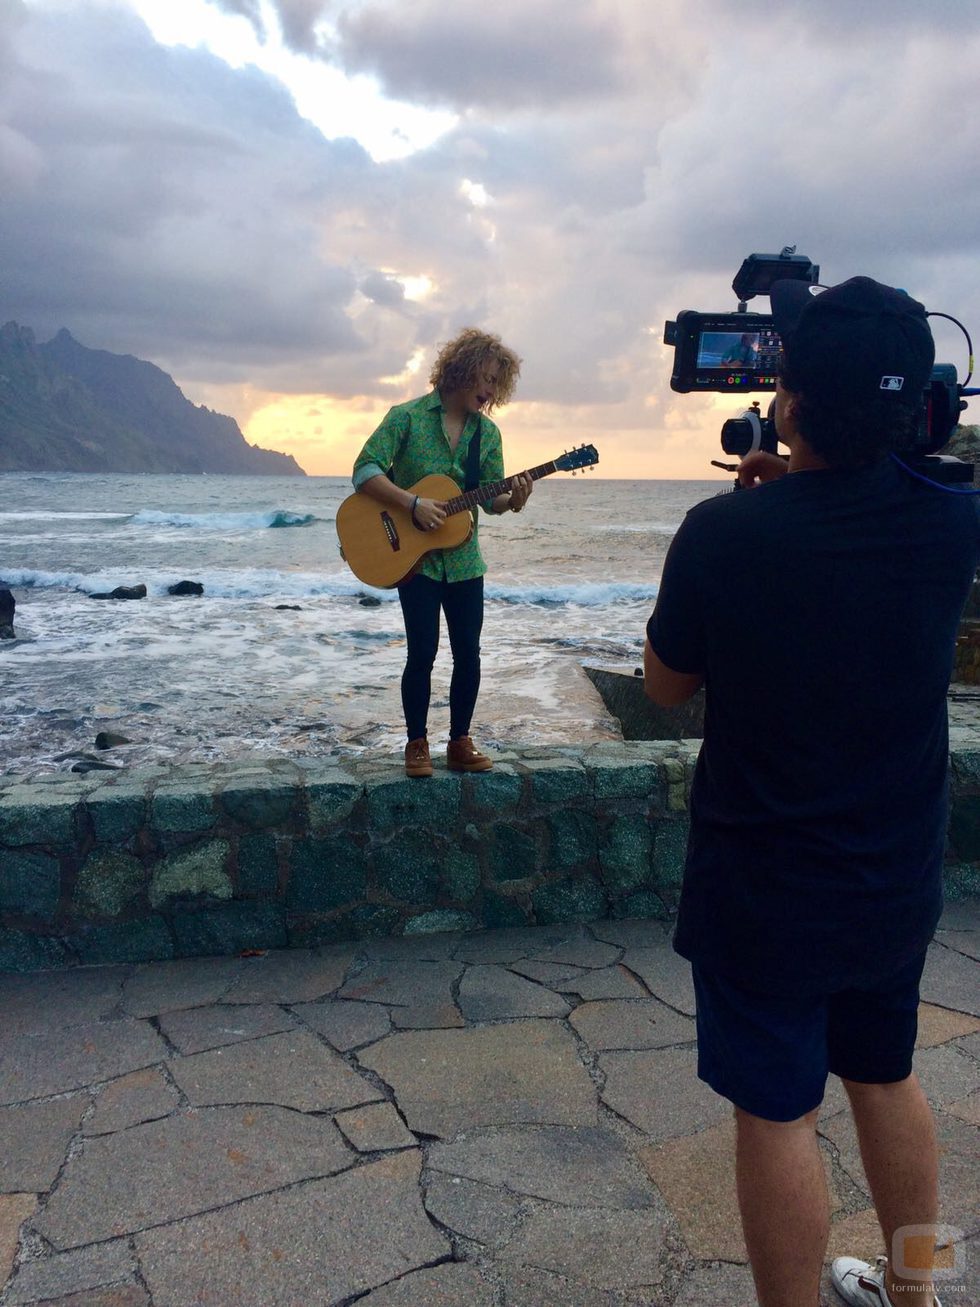 Manel Navarro, guitarra en mano, interpreta "Do it for your lover" durante la grabación del videoclip en Tenerife